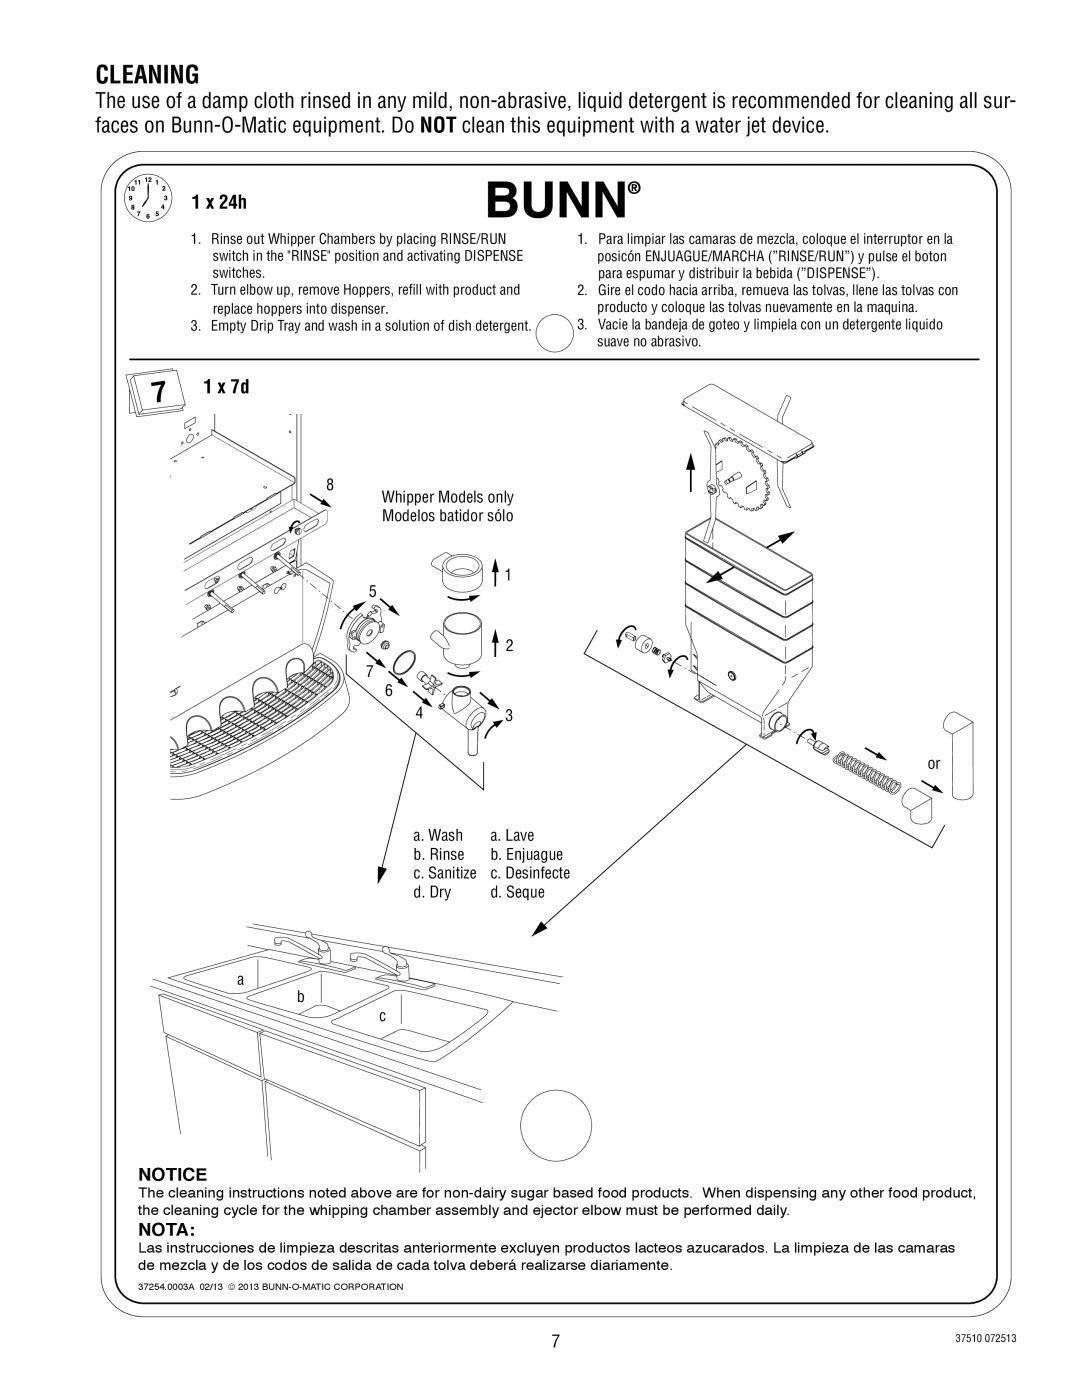 Bunn IMIX-4, IMIX-5 service manual Cleaning, 1 x 24h, 1 x 7d, Notice, Nota 